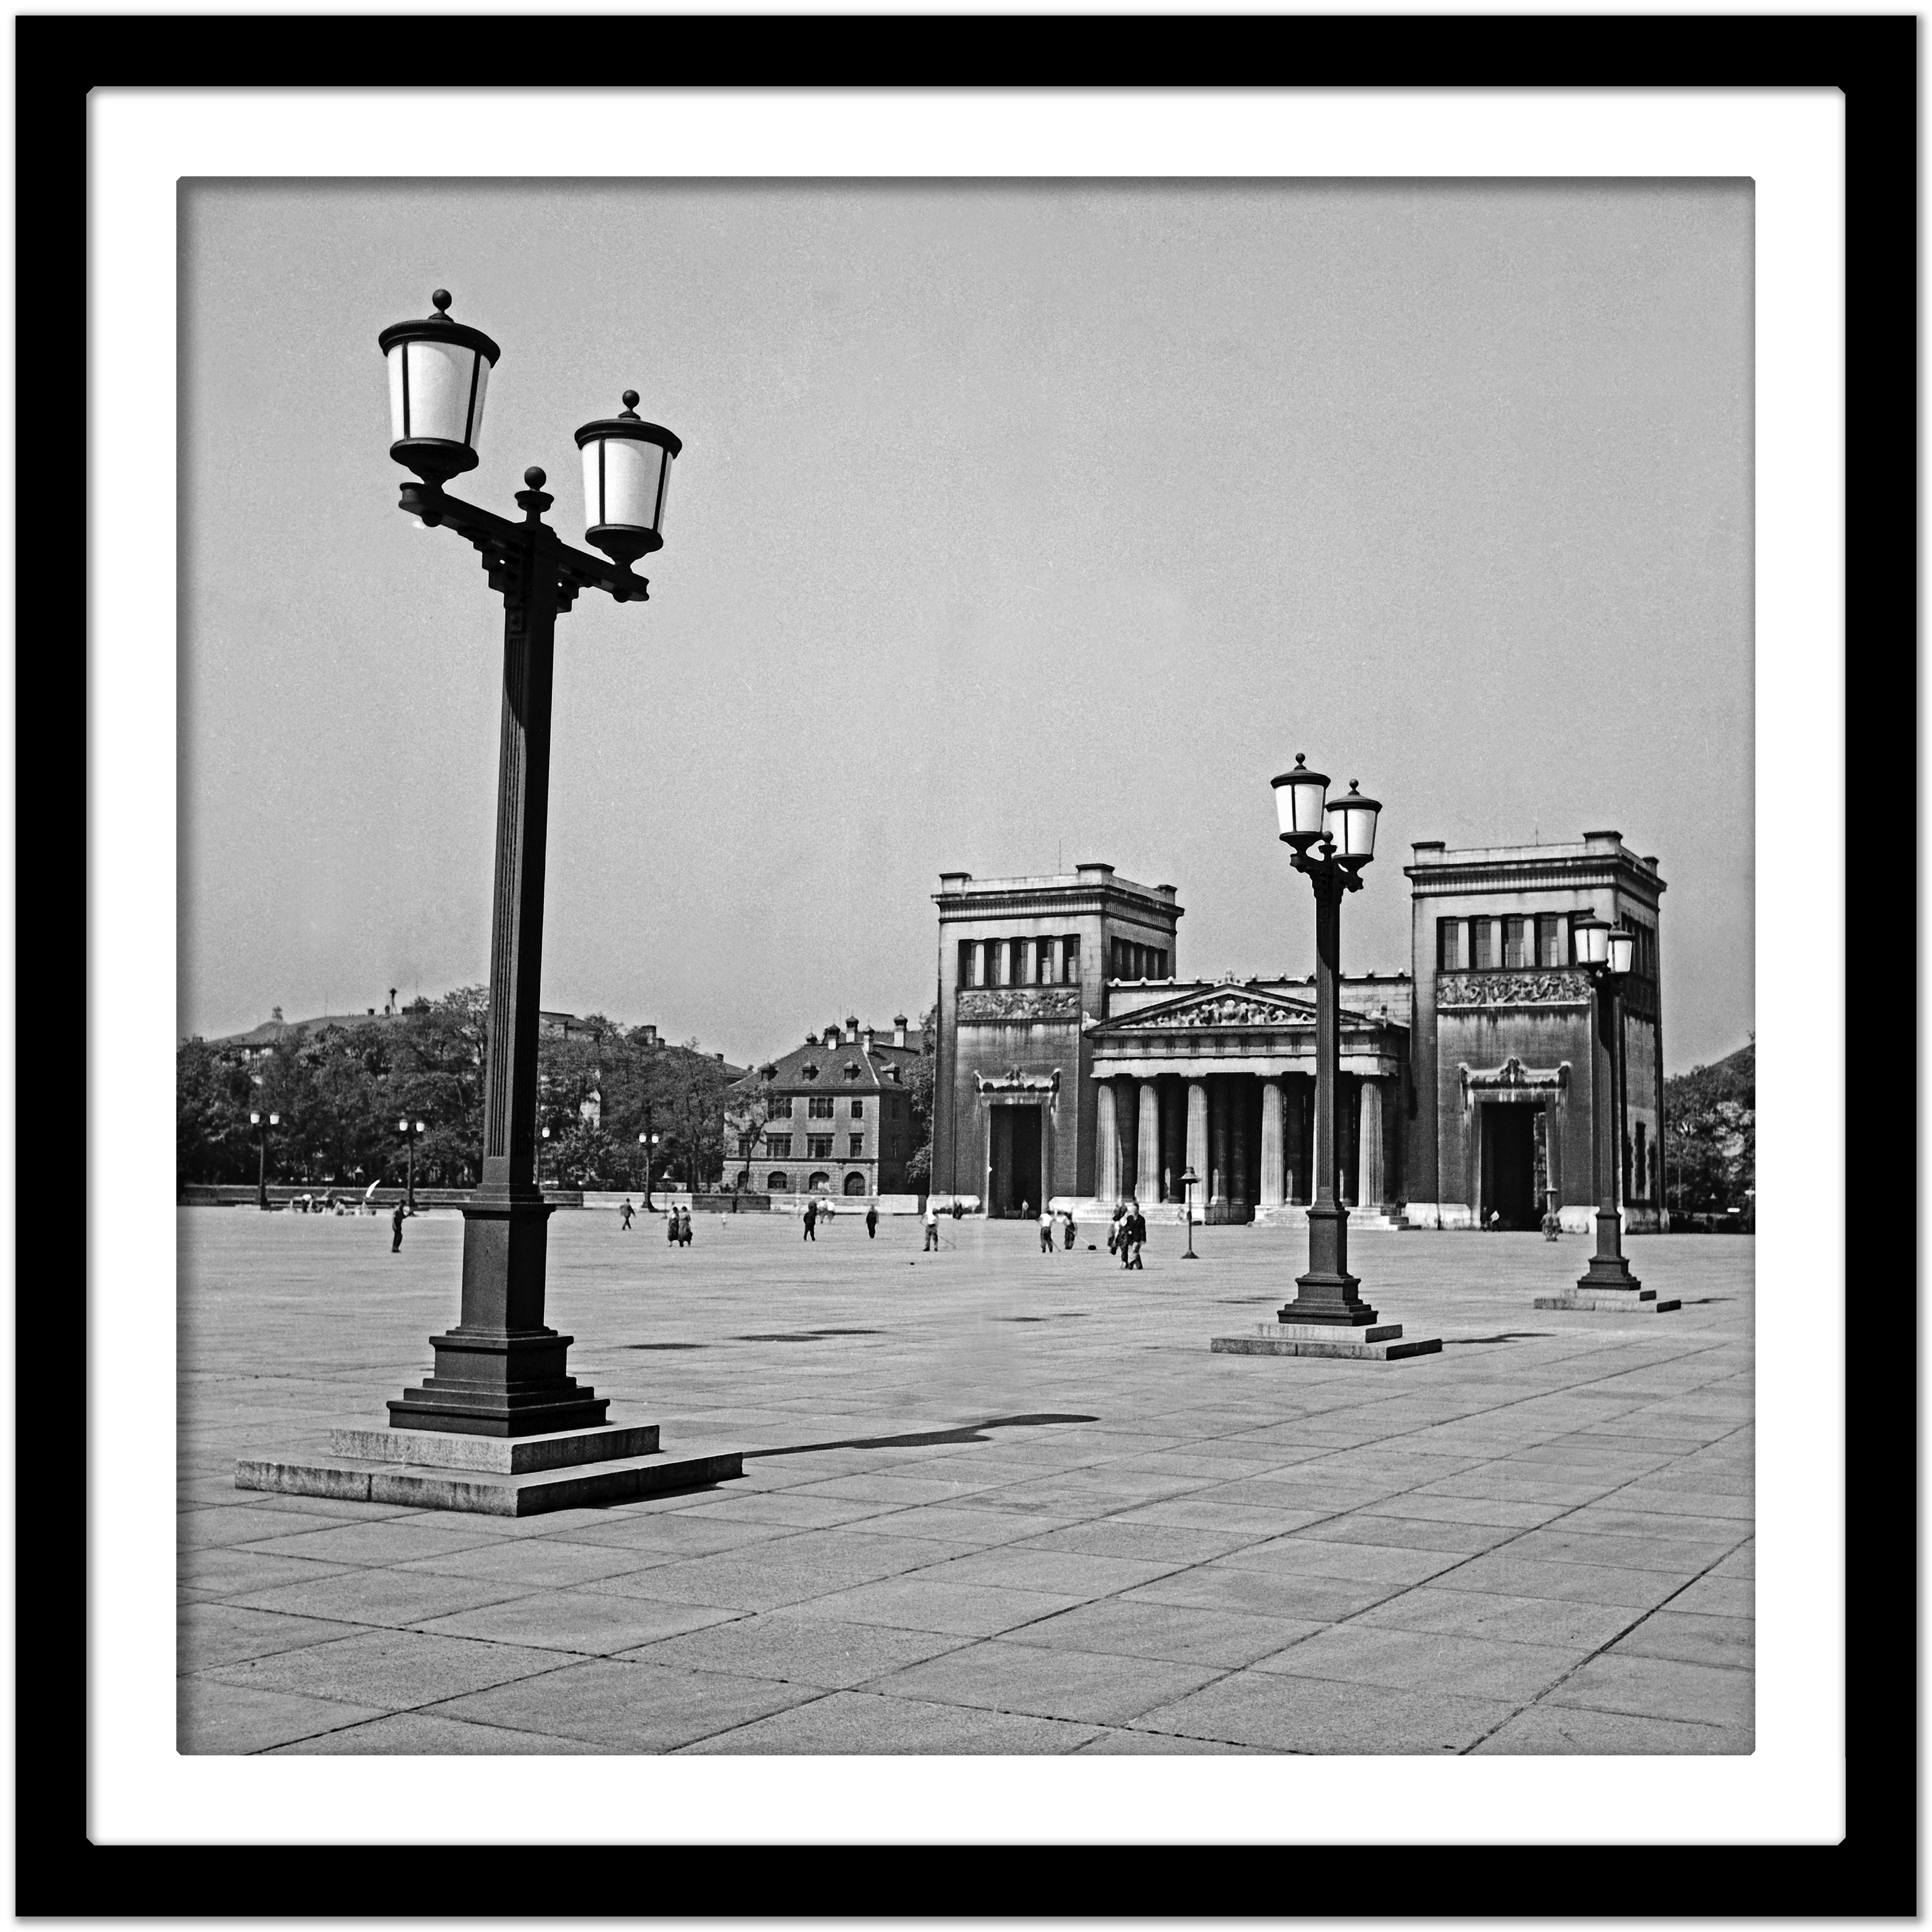 Temple auf dem Koenigplatz der Stadt, München, Deutschland 1937, später gedruckt (Grau), Black and White Photograph, von Karl Heinrich Lämmel